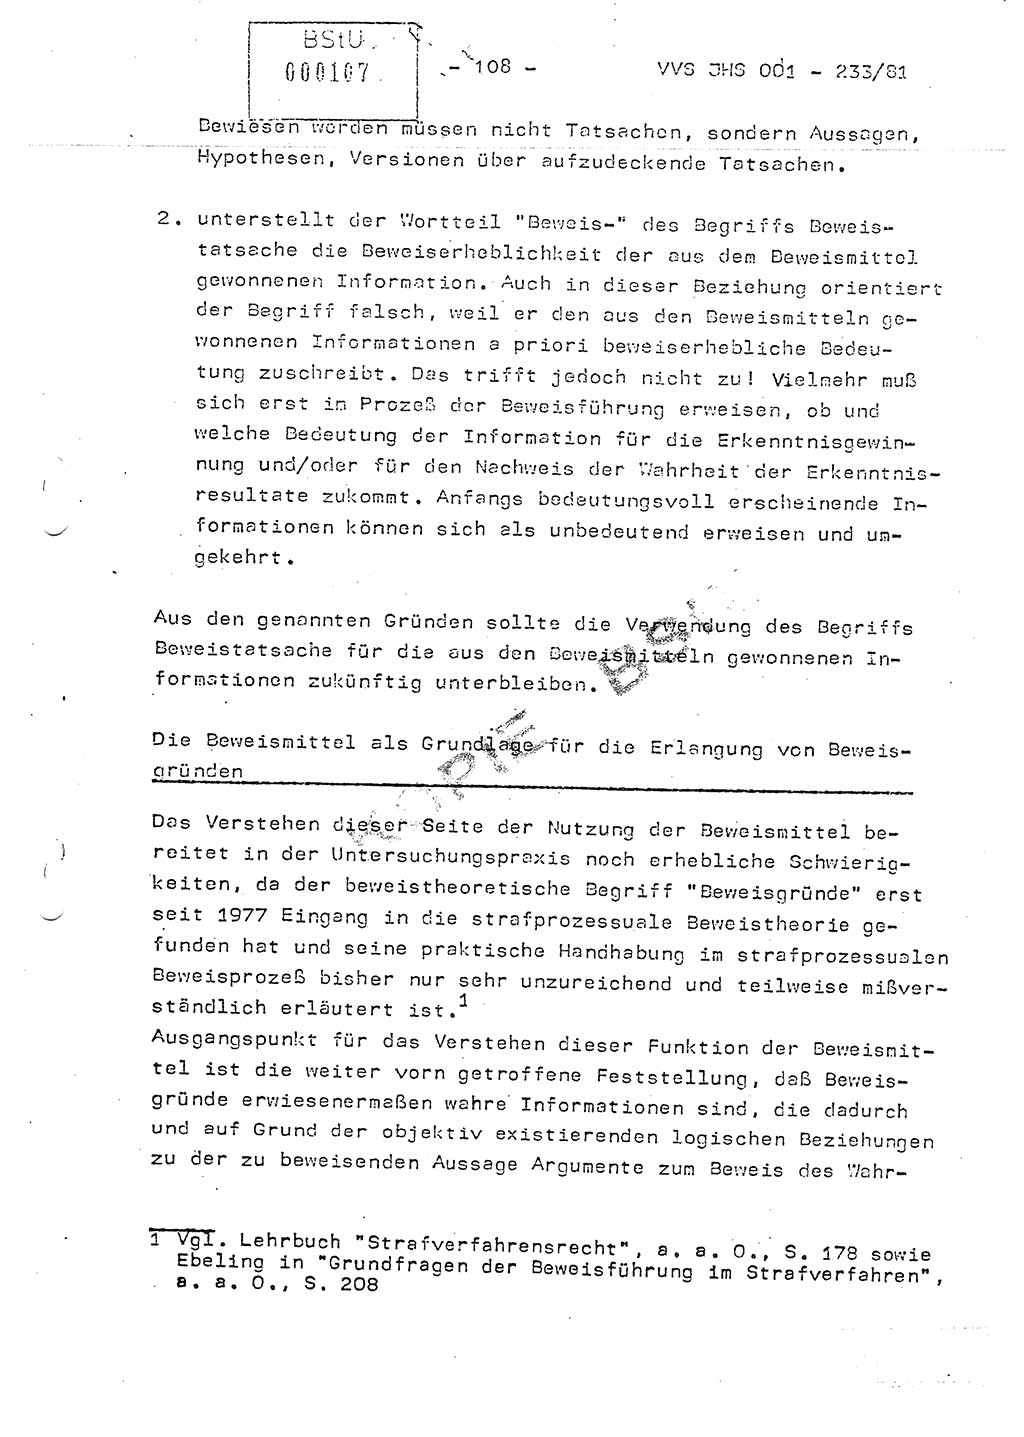 Dissertation Oberstleutnant Horst Zank (JHS), Oberstleutnant Dr. Karl-Heinz Knoblauch (JHS), Oberstleutnant Gustav-Adolf Kowalewski (HA Ⅸ), Oberstleutnant Wolfgang Plötner (HA Ⅸ), Ministerium für Staatssicherheit (MfS) [Deutsche Demokratische Republik (DDR)], Juristische Hochschule (JHS), Vertrauliche Verschlußsache (VVS) o001-233/81, Potsdam 1981, Blatt 108 (Diss. MfS DDR JHS VVS o001-233/81 1981, Bl. 108)